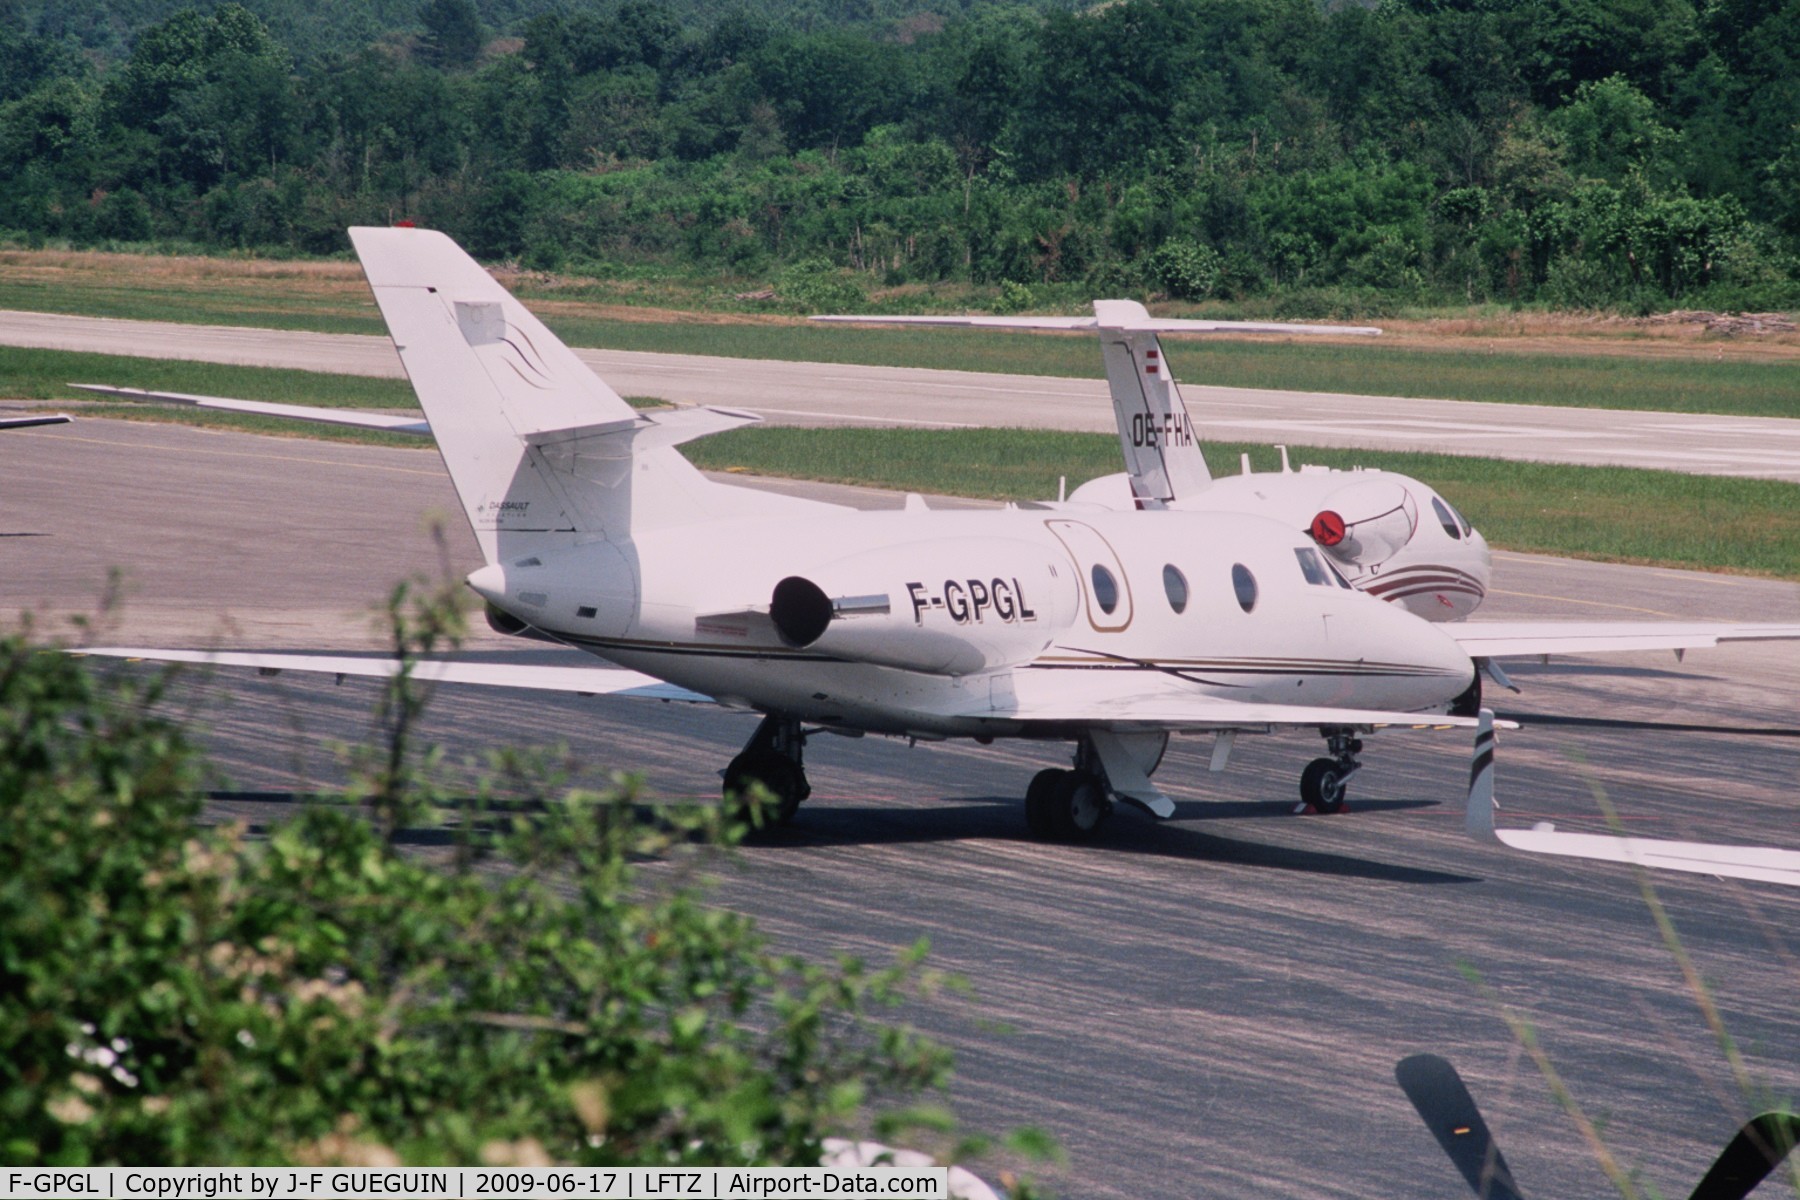 F-GPGL, 1983 Dassault Falcon 10 C/N 203, F-GPGL at La Mole airport.